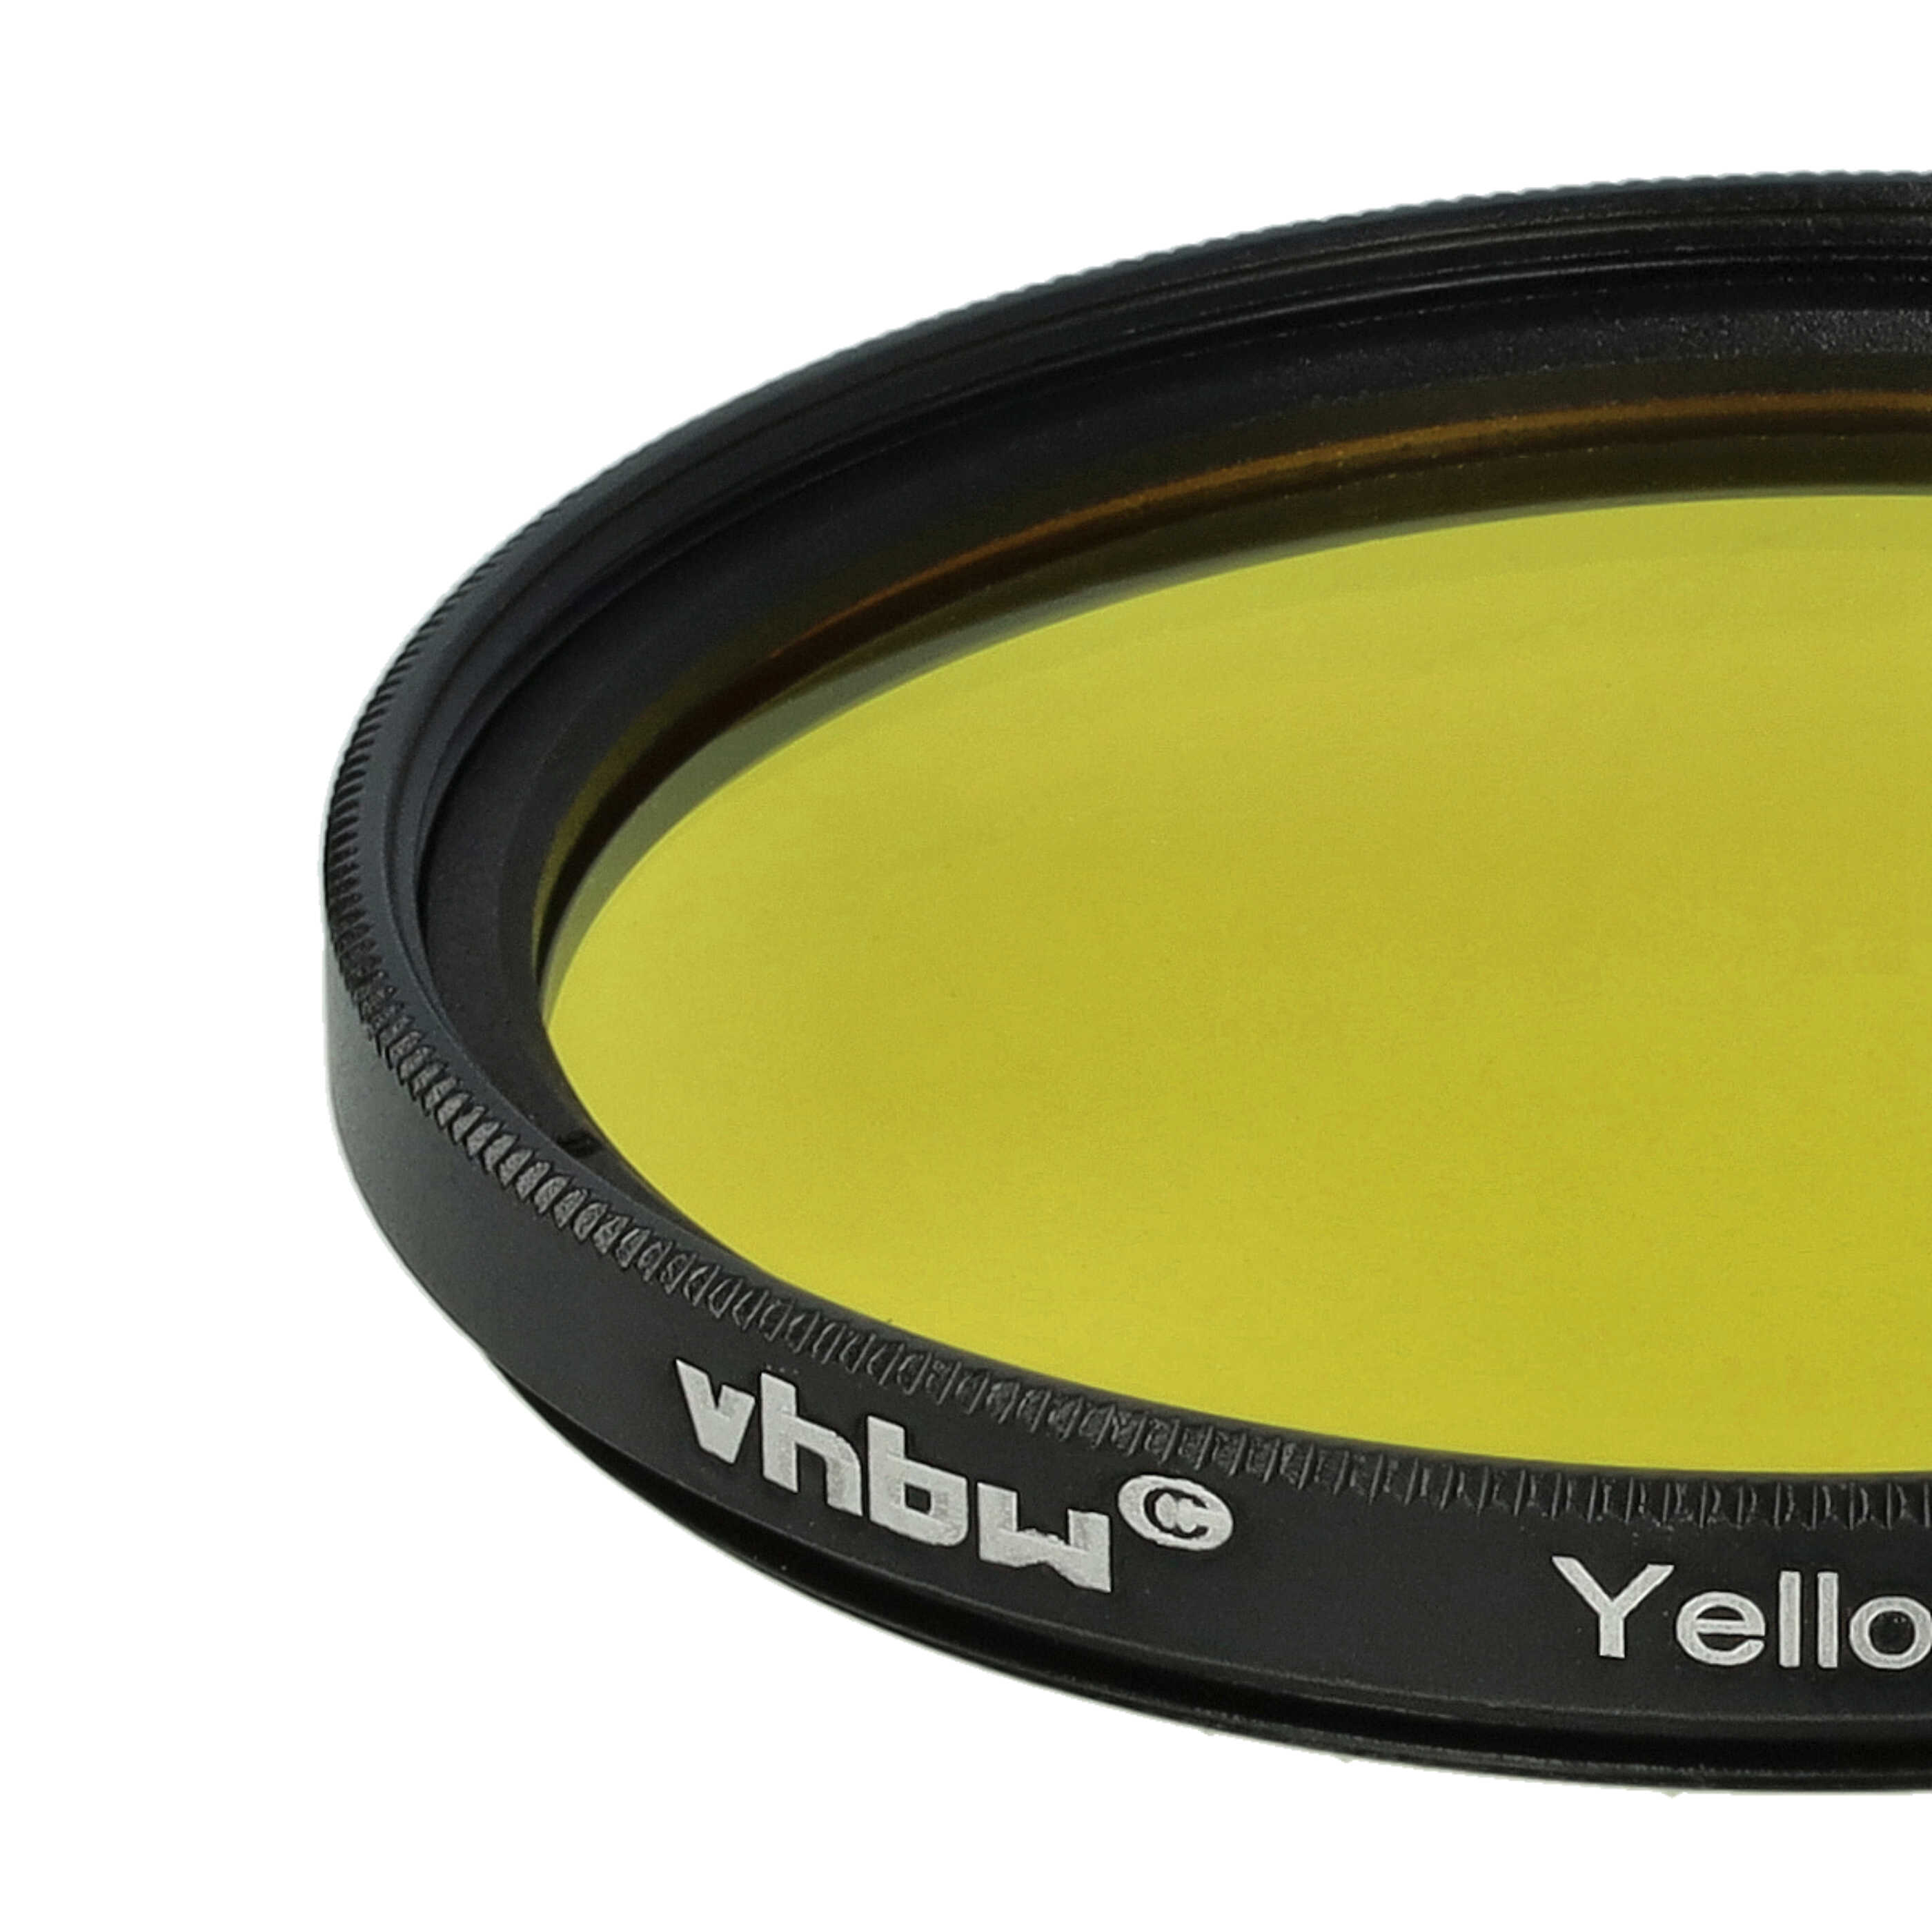 Filtr fotograficzny na obiektywy z gwintem 49 mm - filtr żółty